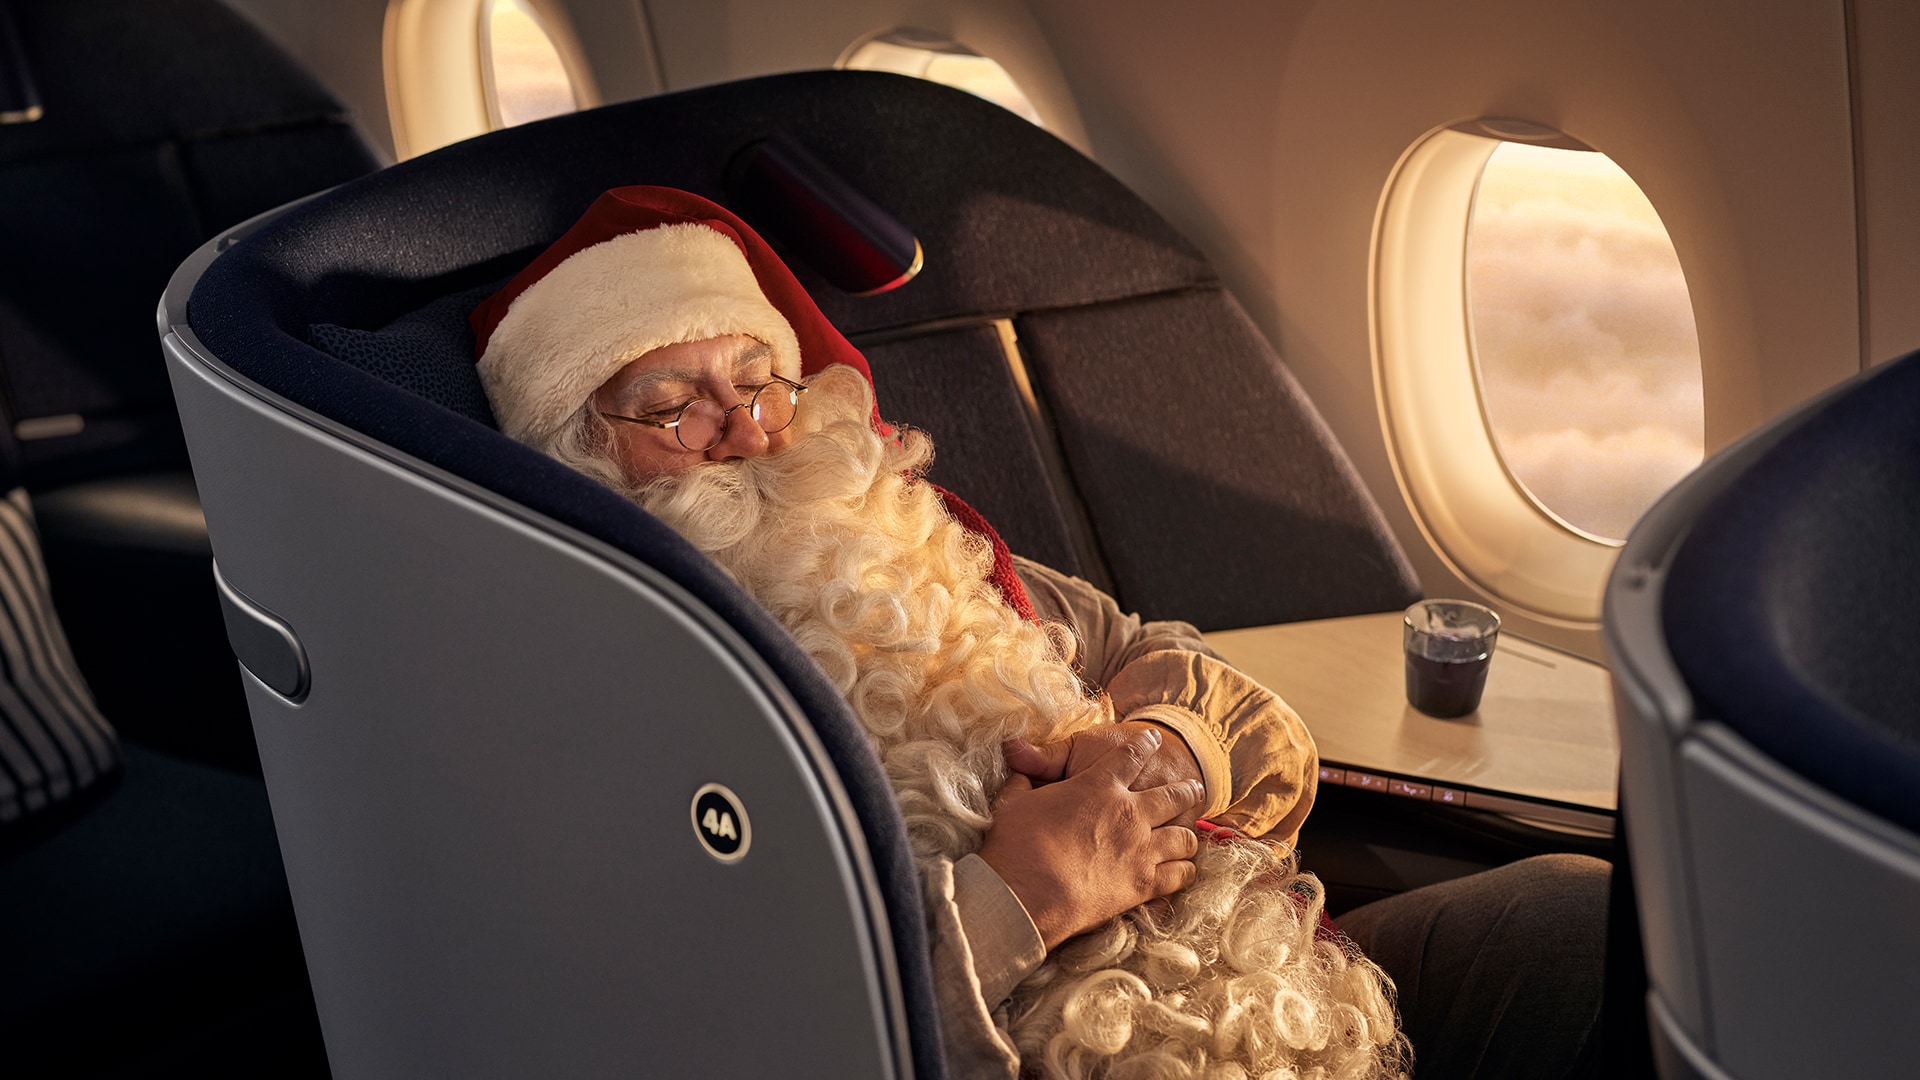 Joulupukki aloittaa Finnairin lentäjänä – ”Tämä on ollut lapsuudesta asti  salainen haaveeni” | Finnair Suomi